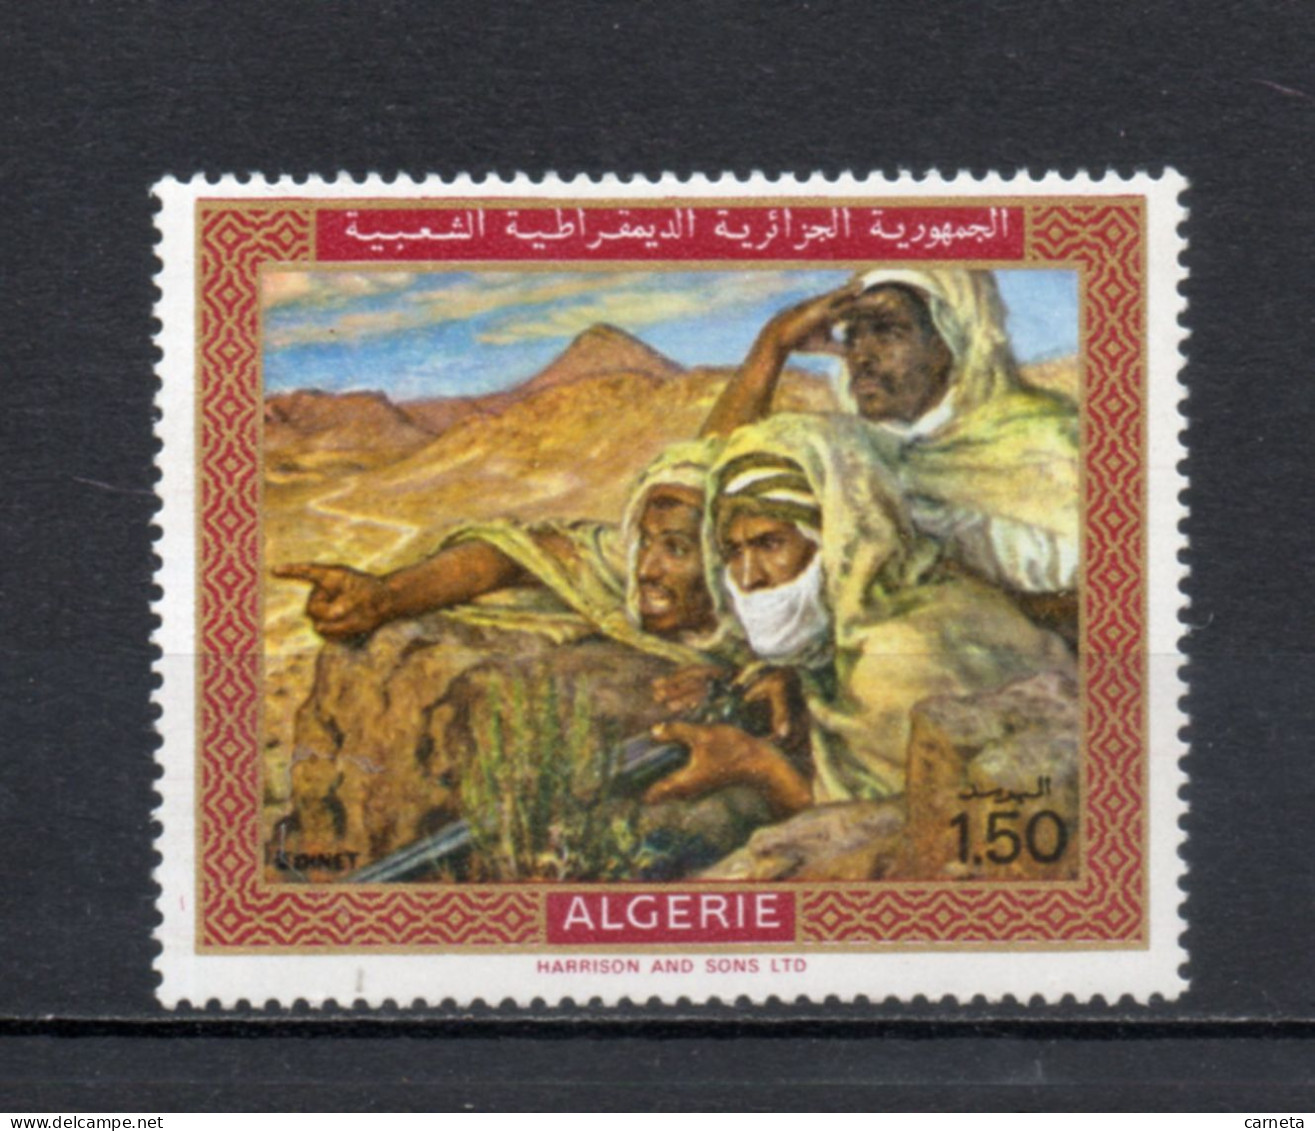 ALGERIE N° 504   NEUF SANS CHARNIERE COTE 3.50€    PEINTRE TABLEAUX ART - Algerien (1962-...)